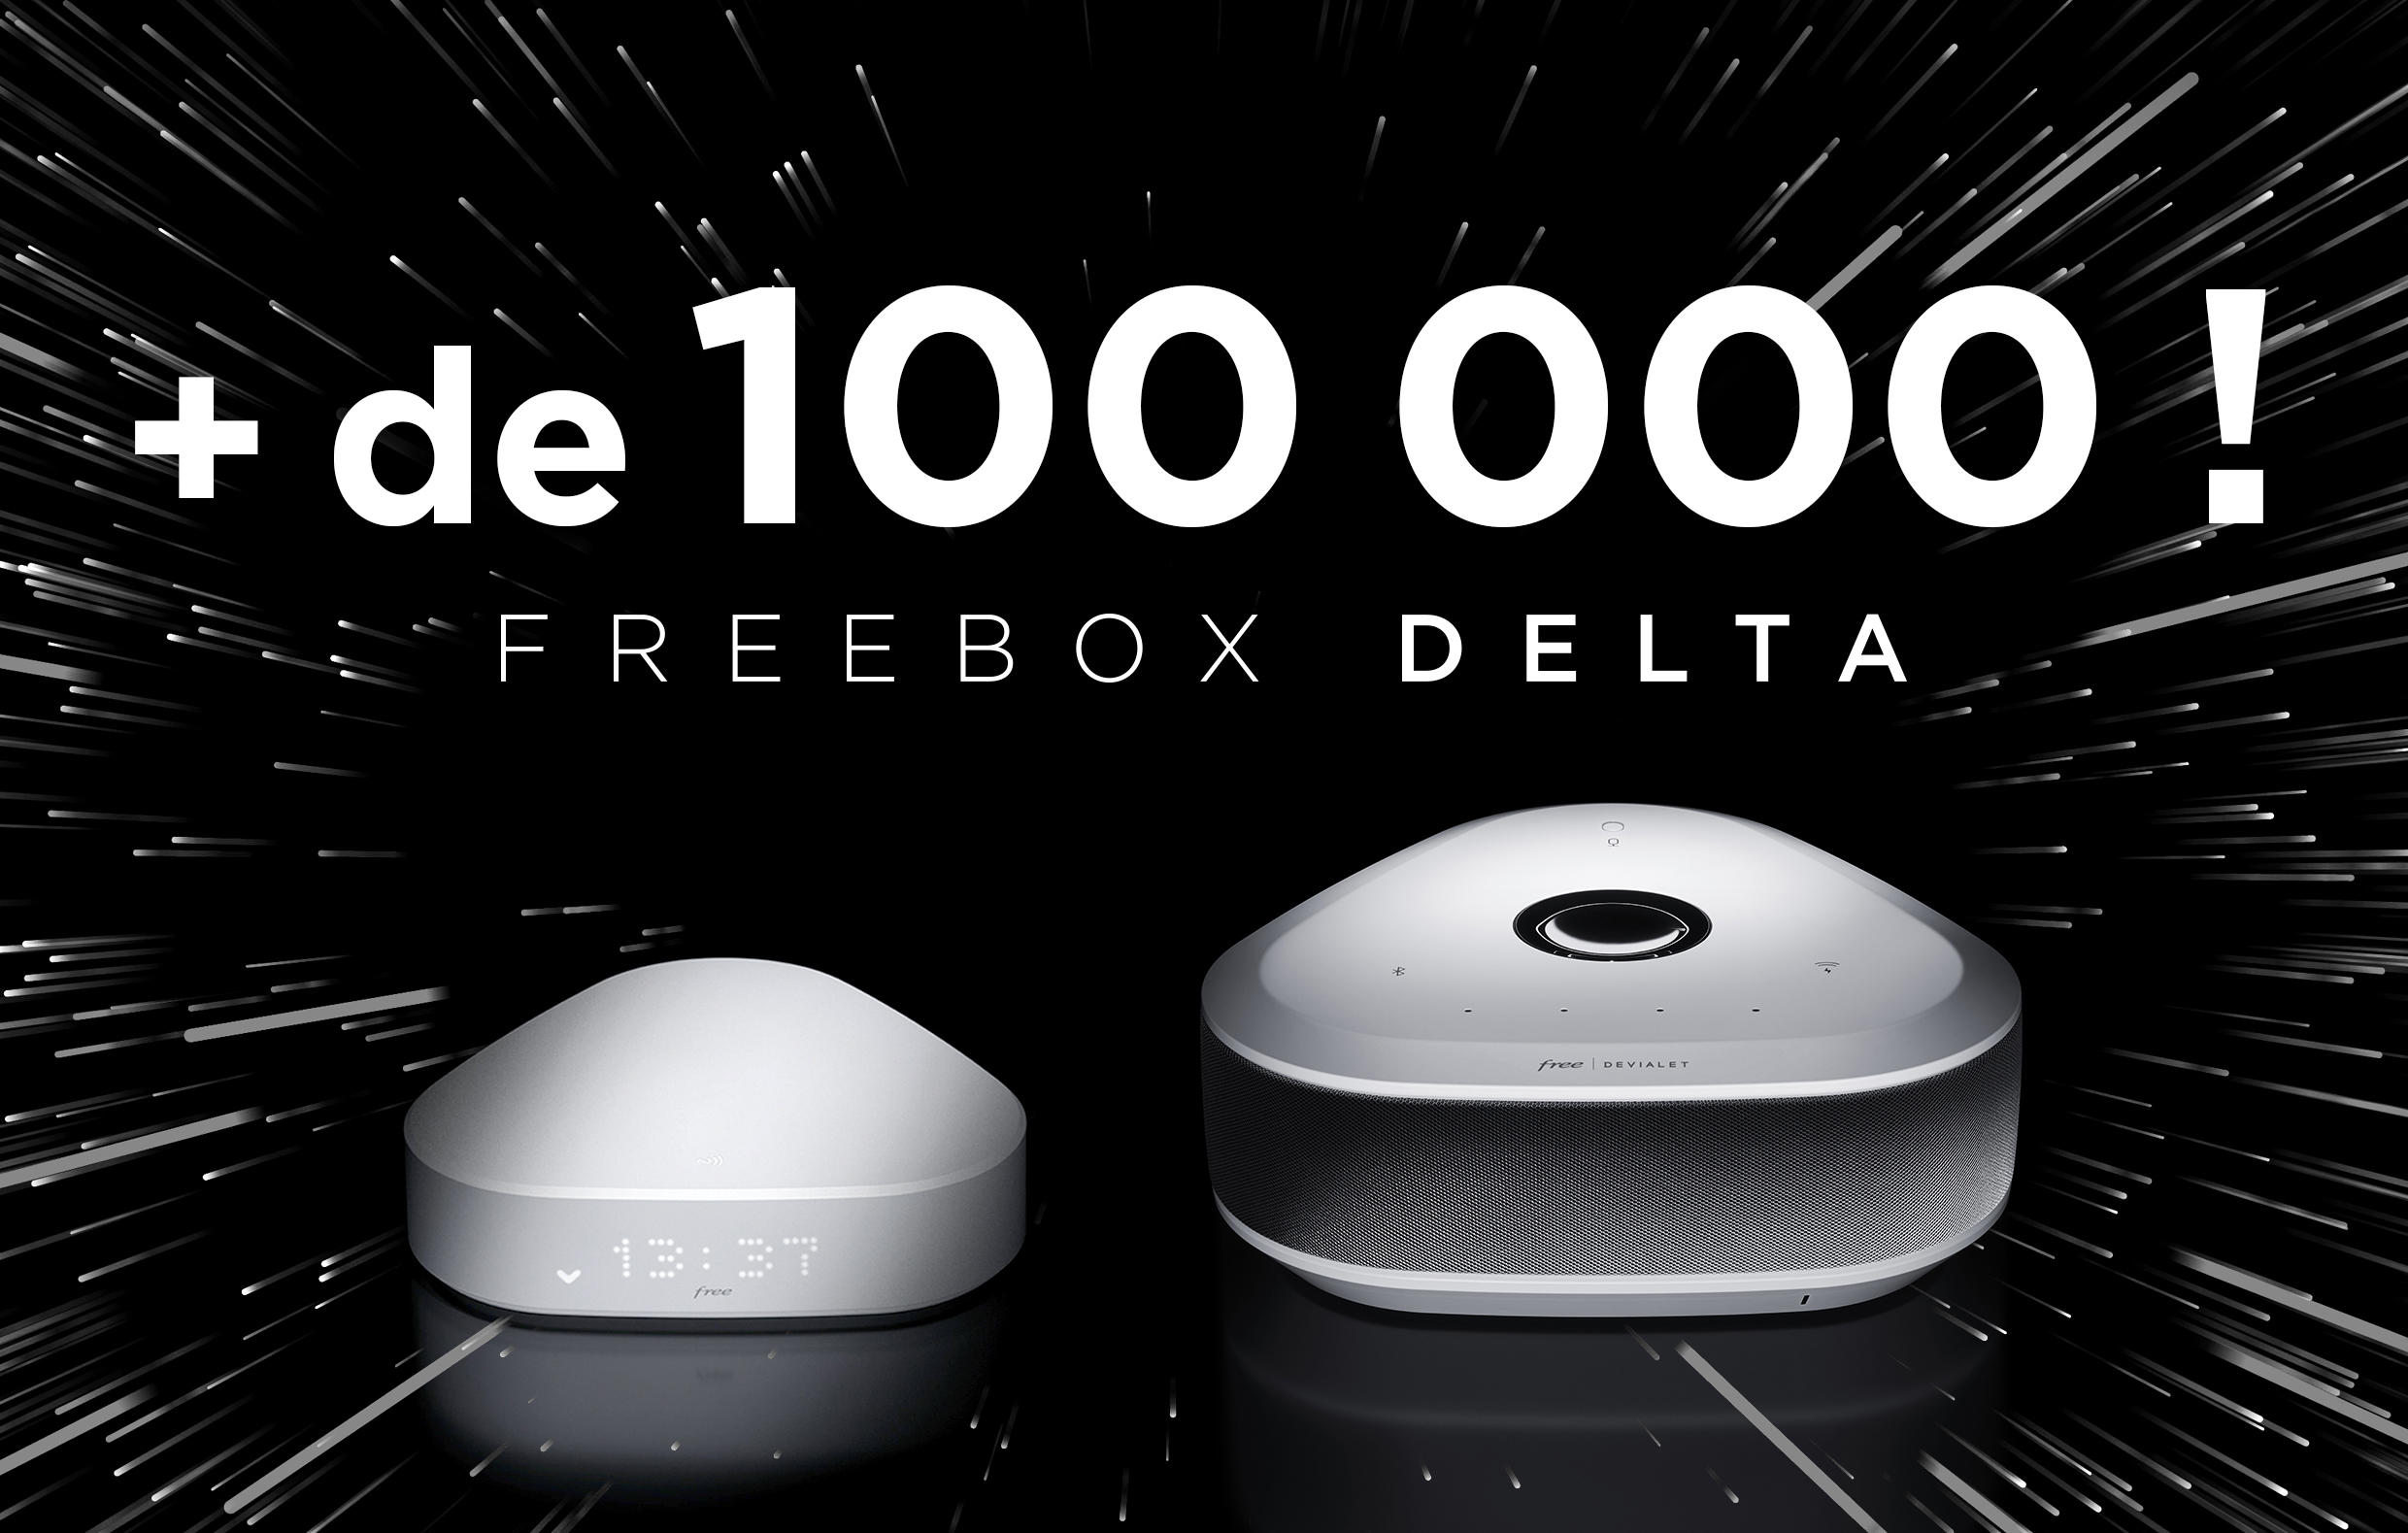 Free: La Freebox Delta a séduit + de 100 000 abonnés